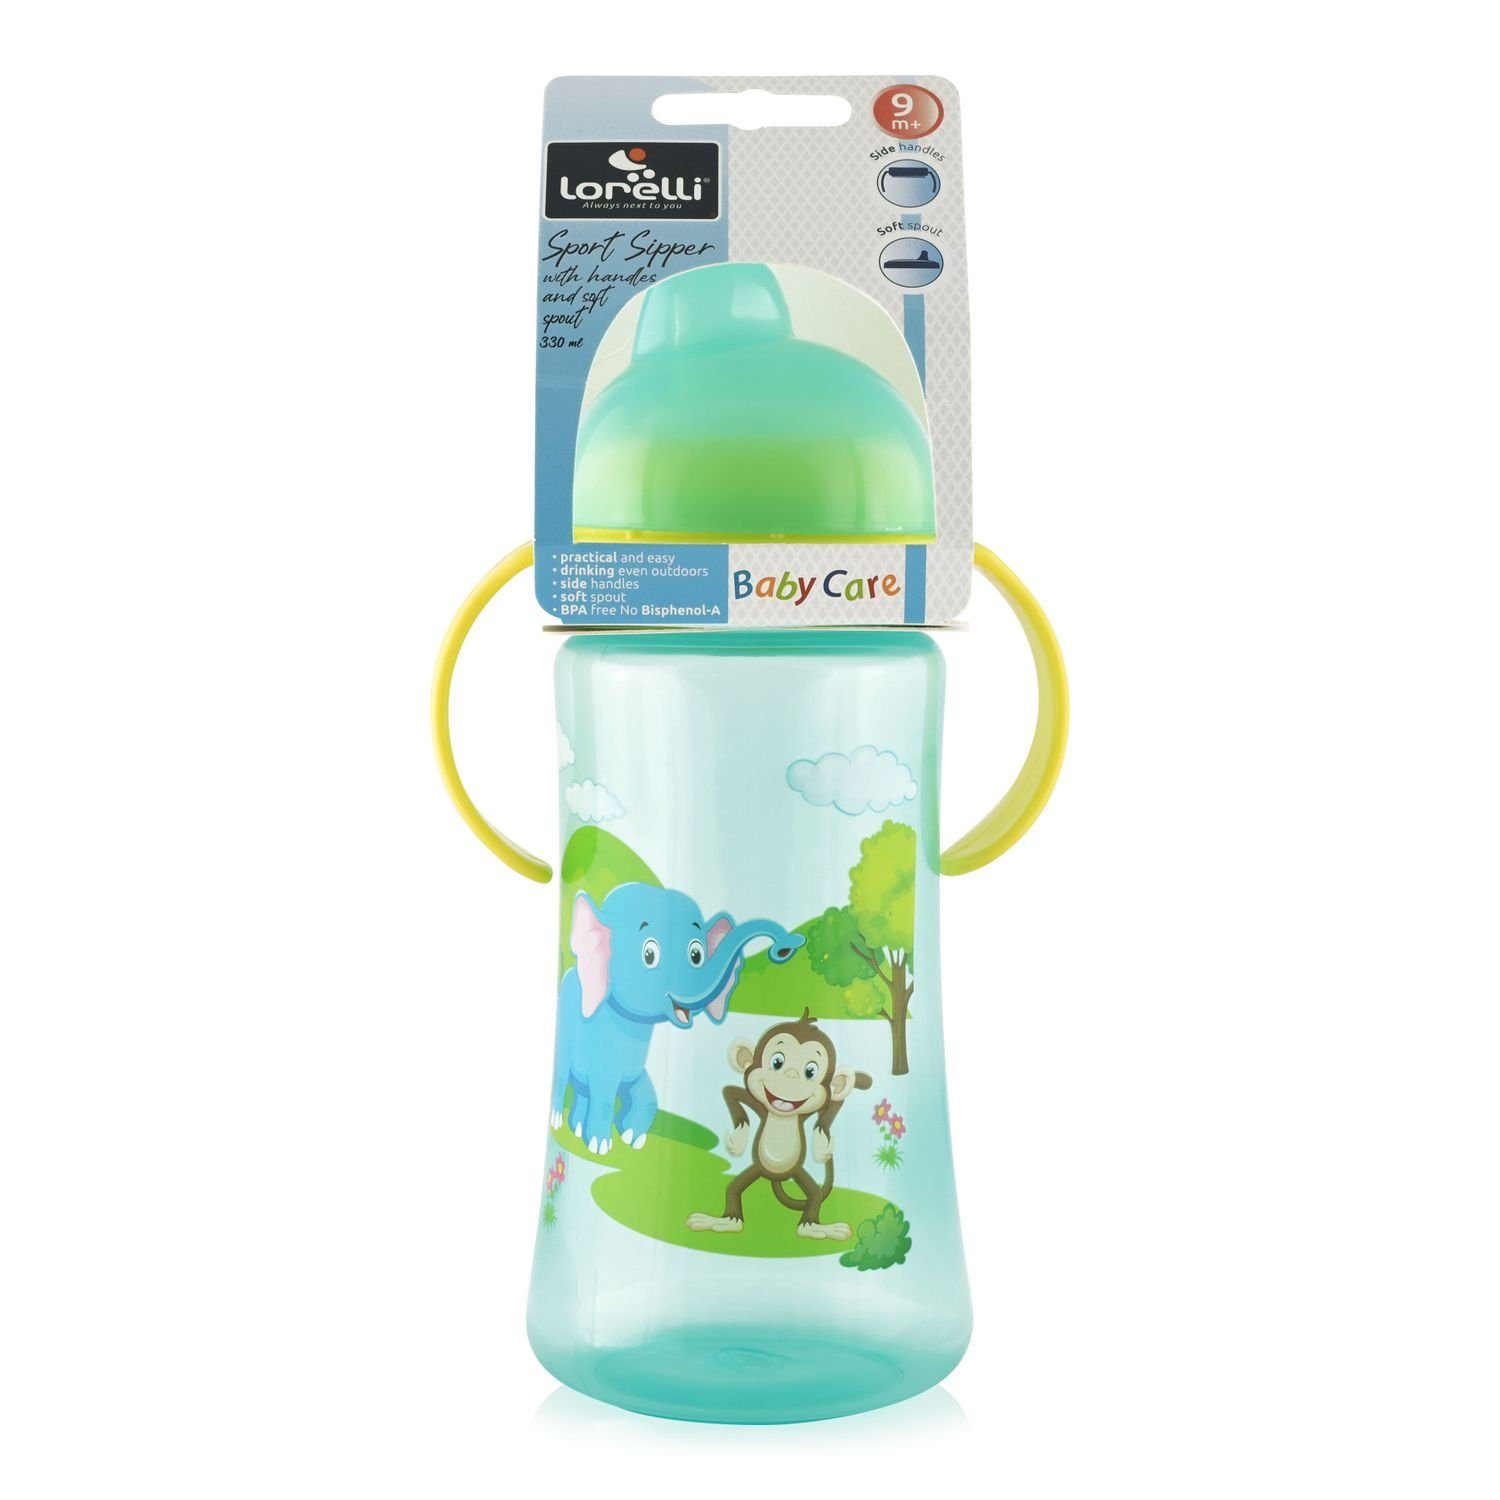 Haltegriffe grün weiches Trinkflasche Mundstück Sport Care Sipper, 330 ml Trinkflasche Deckel Baby